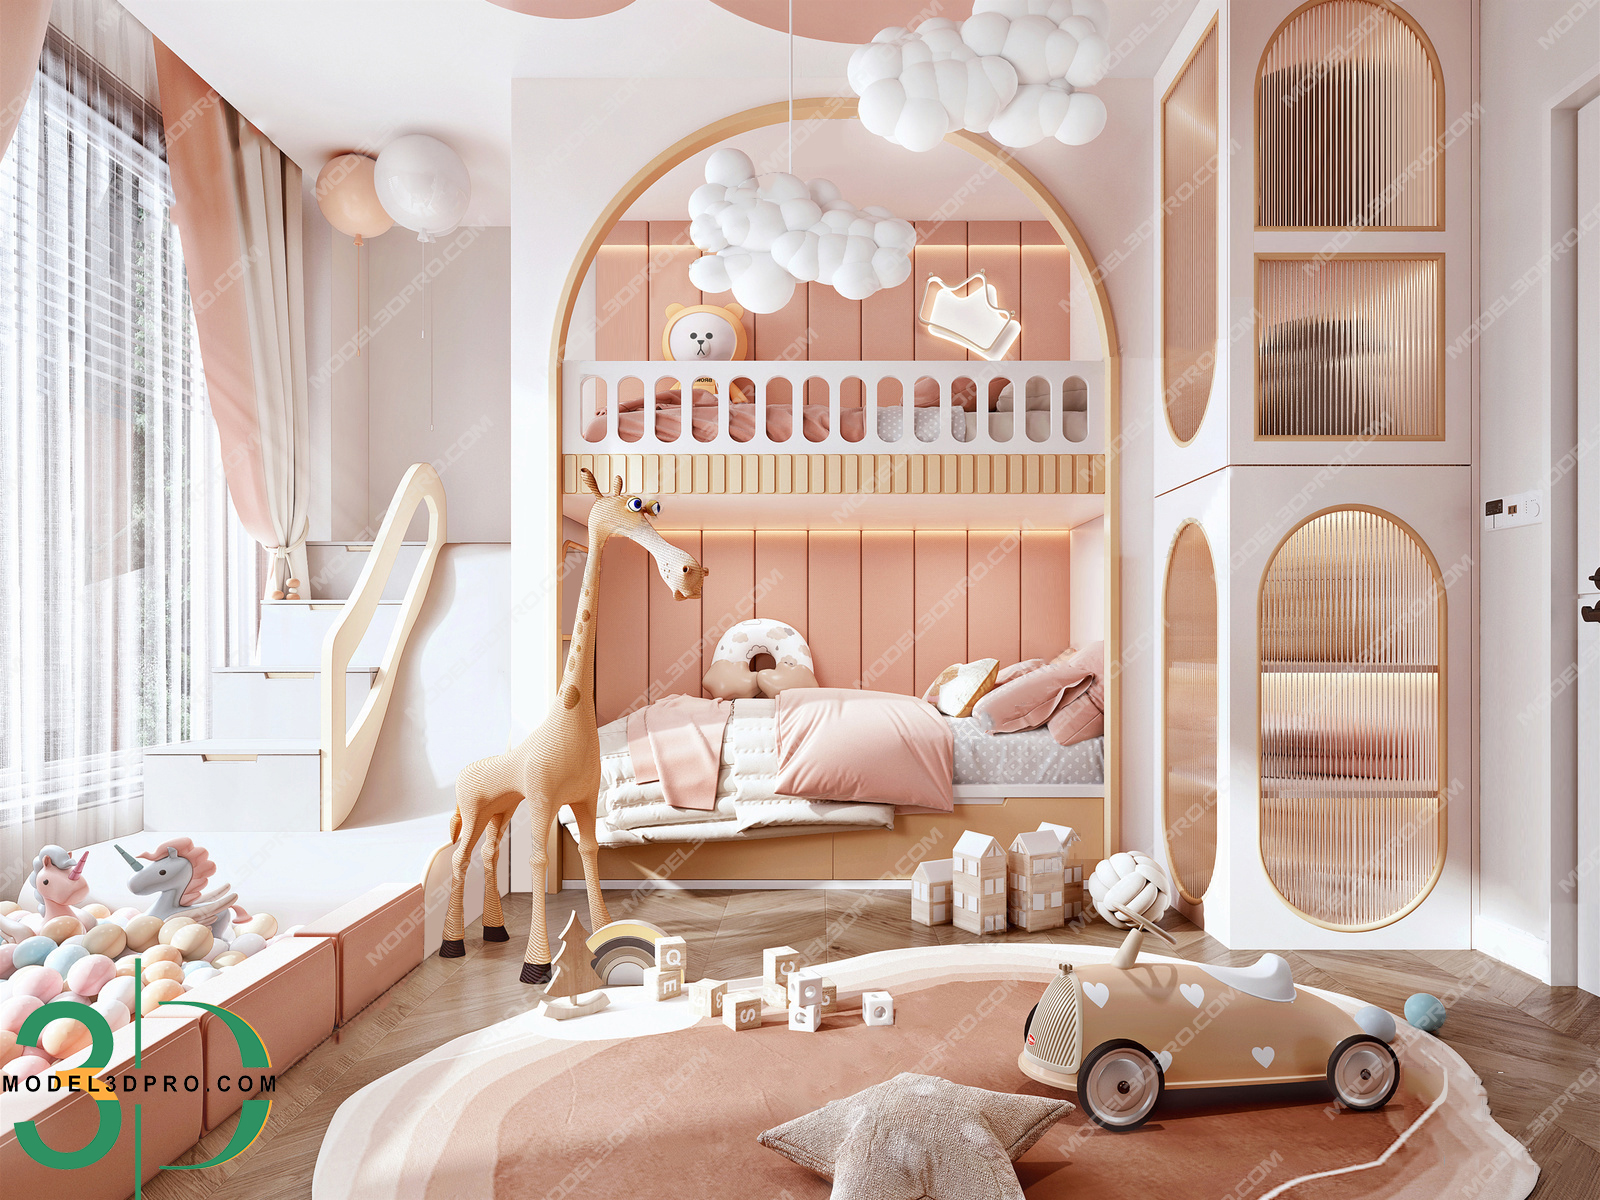 Children'S Bedroom 3D Models for Download